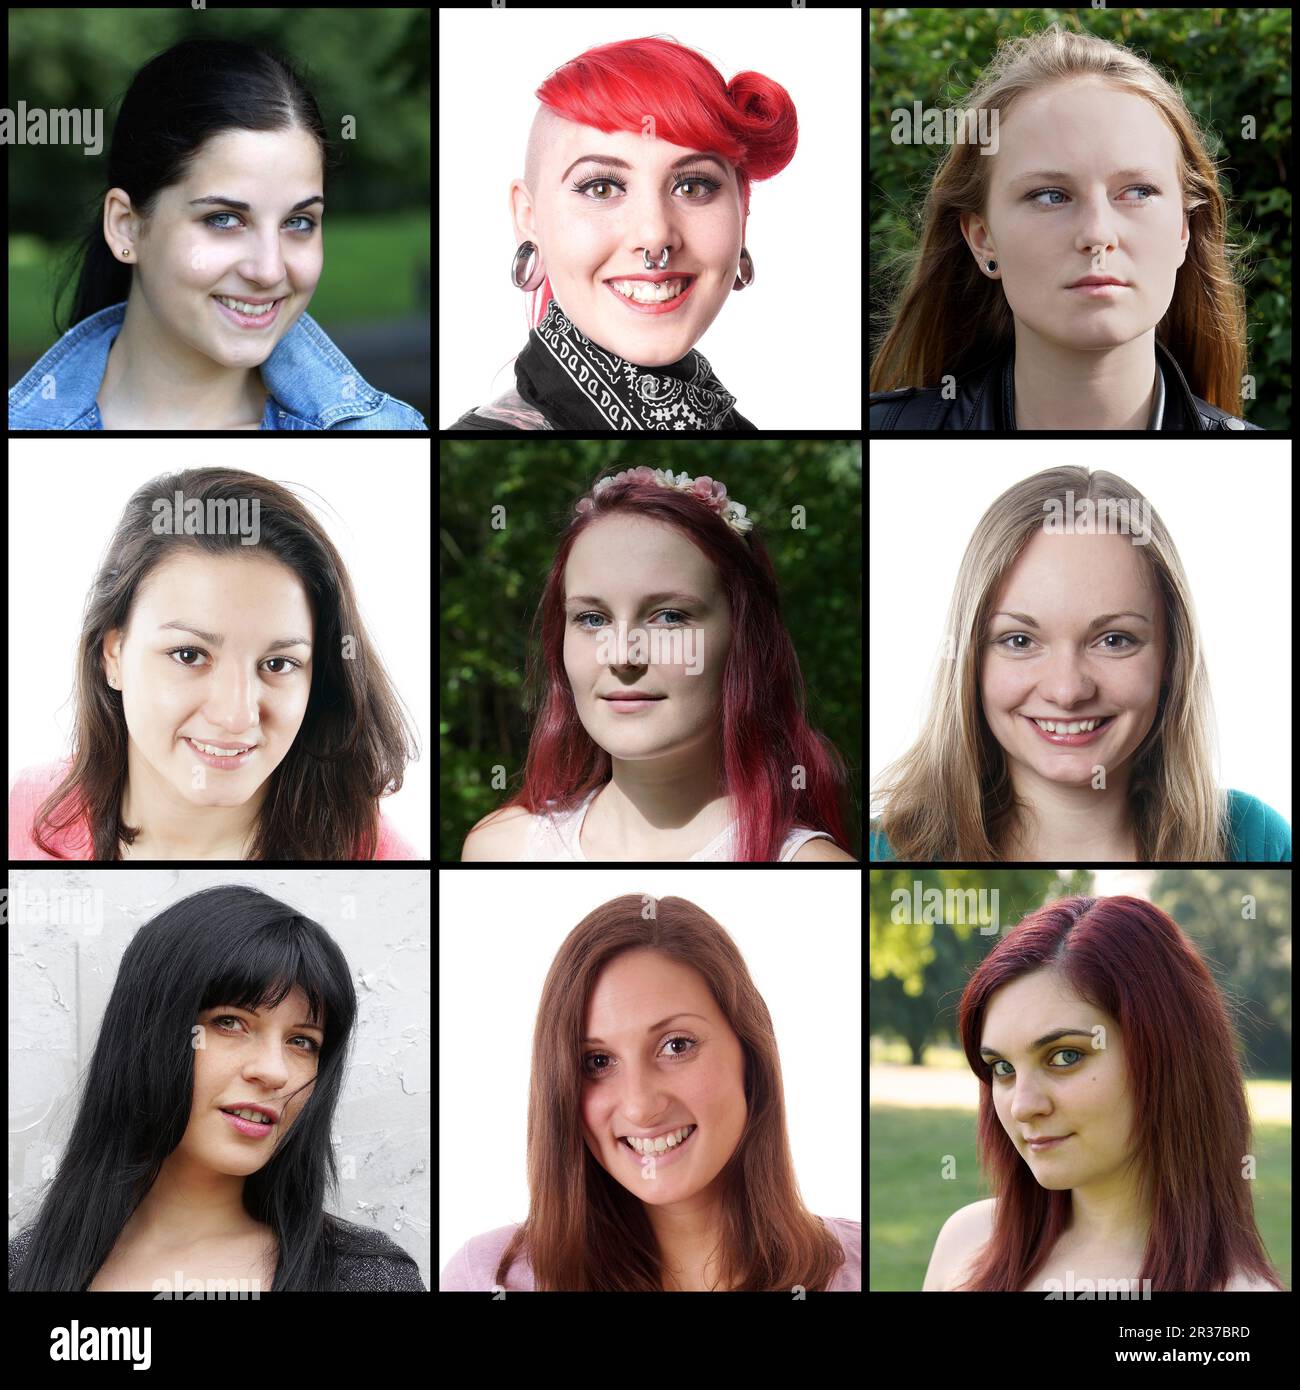 Kollektion mit 9 verschiedenen weissen Frauen im Alter von 18 bis 30 Jahren Stockfoto